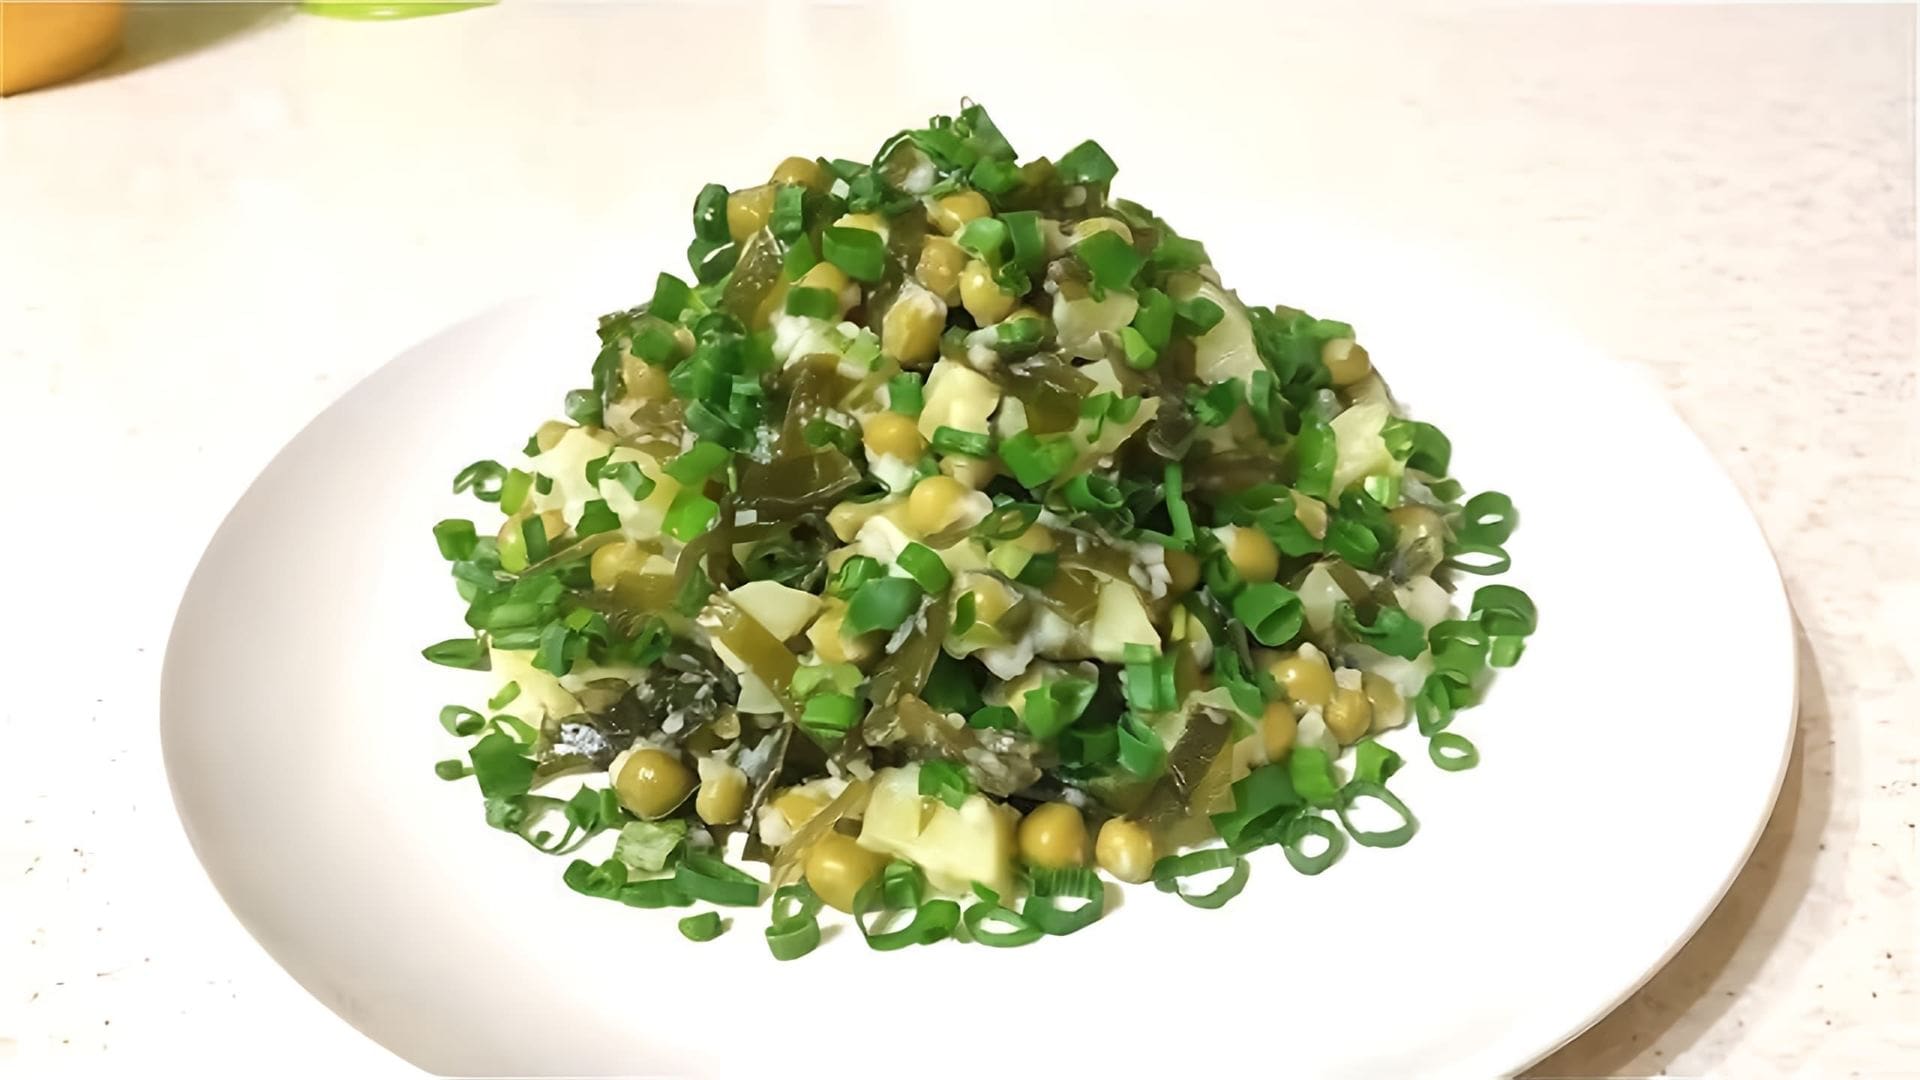 В этом видео демонстрируется процесс приготовления постного картофельного салата с морской капустой